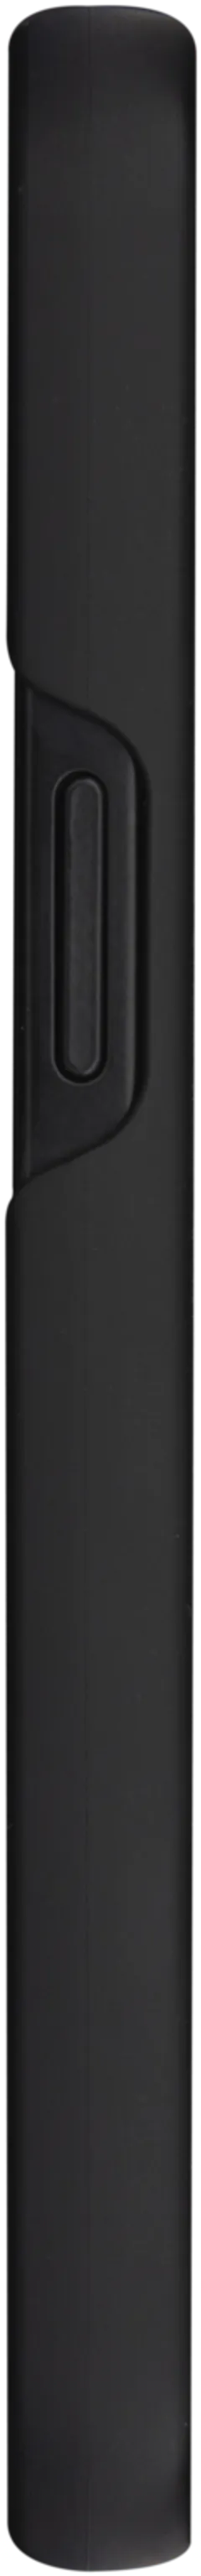 Dbramante1928 Stockholm iPhone 13 suojakuori musta - 8